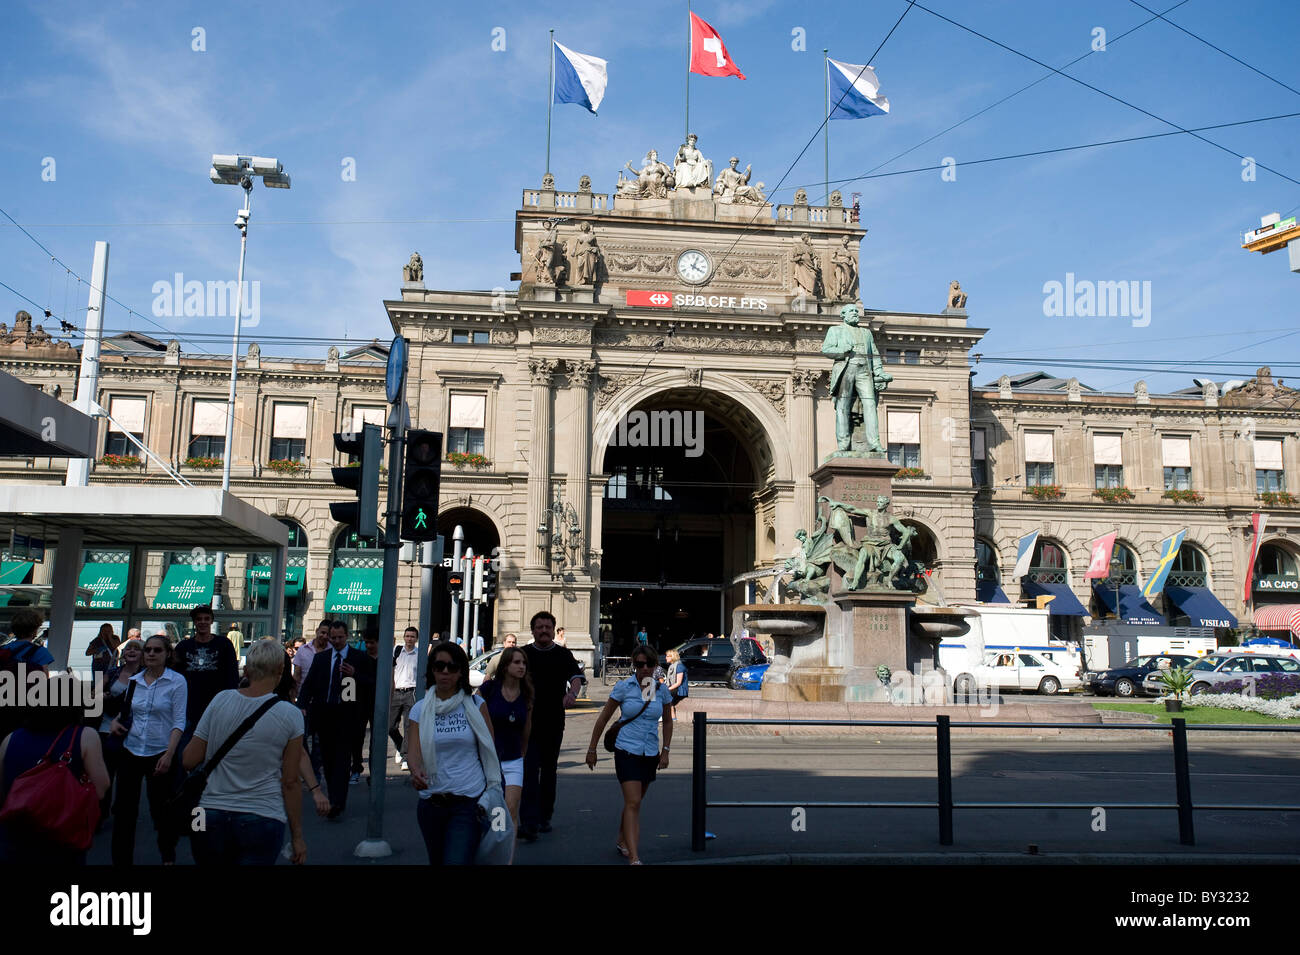 Monument de la voie ferrée pioneer Alfred Escher en face de la gare principale de Zurich, Suisse Banque D'Images